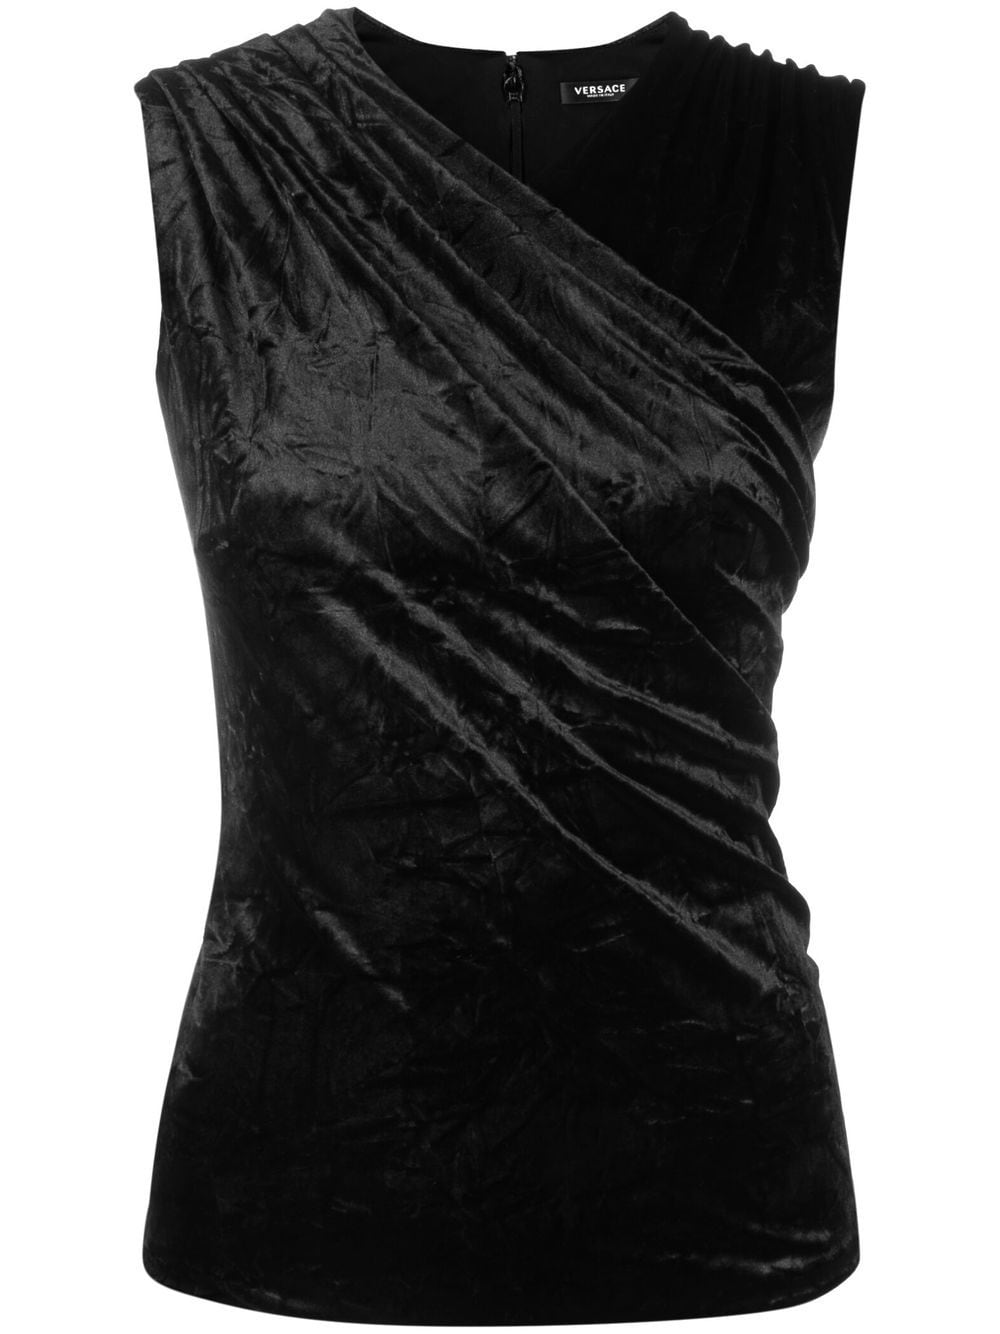 Versace gathered-detail sleeveless top - Black von Versace